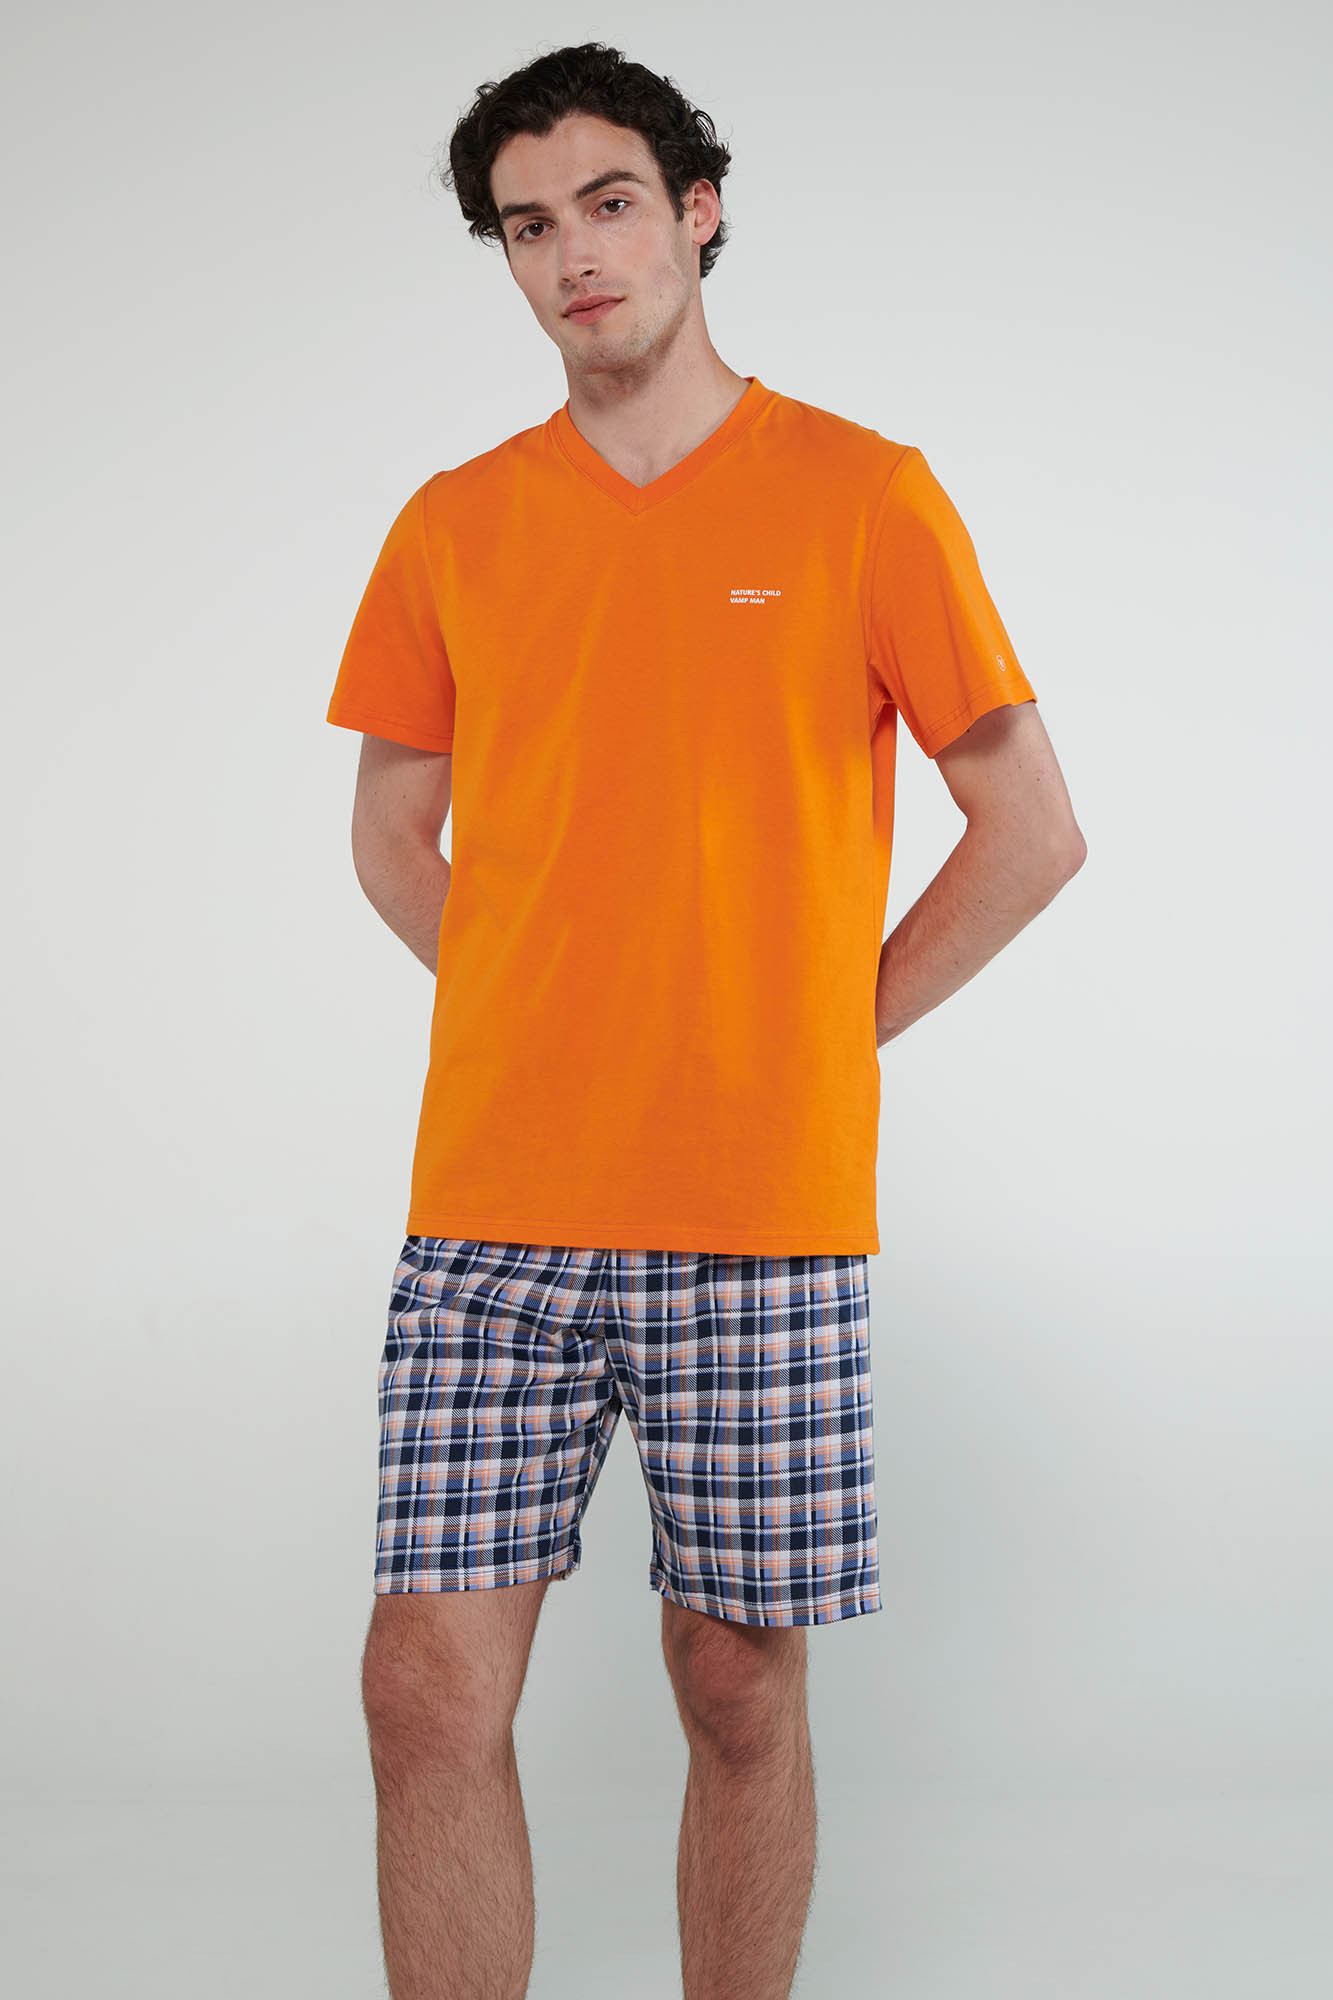 Vamp - Pyžamo s krátkými rukávy 20620 - Vamp orange russet M